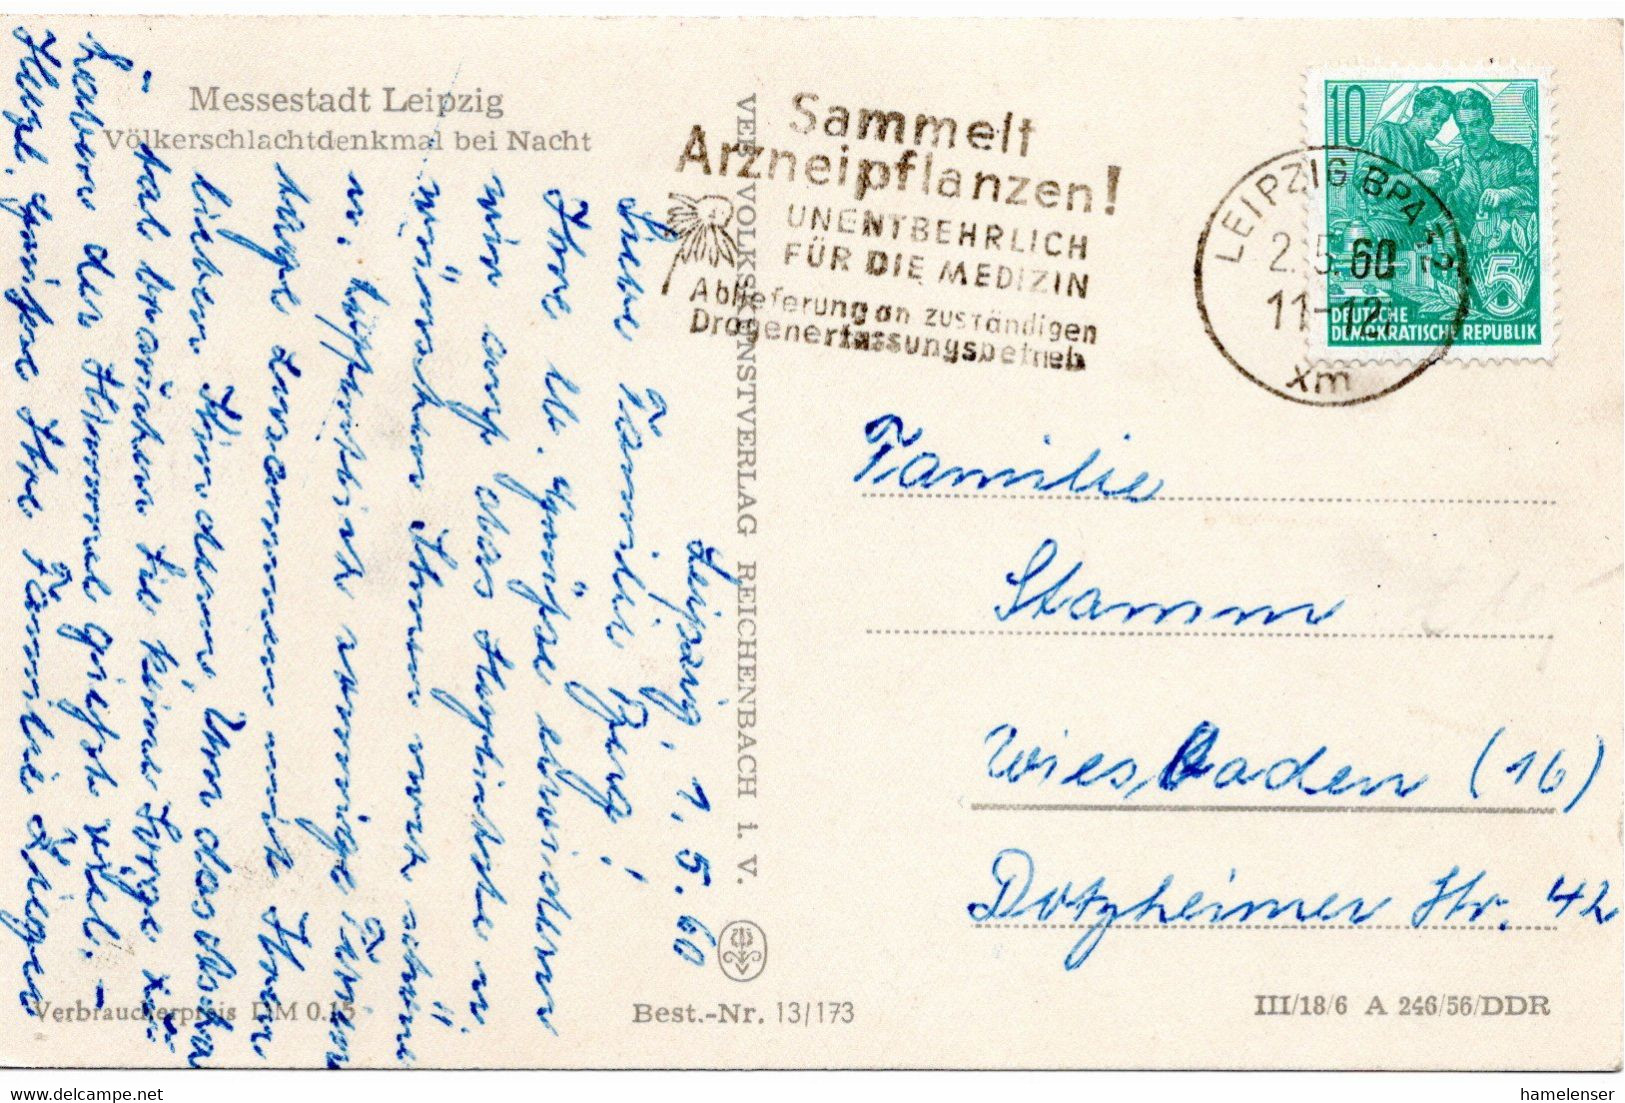 54715 - DDR - 1960 - 10Pfg Fuenfjahrplan EF A AnsKte LEIPZIG - SAMMELT ARZNEIPFLANZEN ... -> Westdeutschland - Heilpflanzen